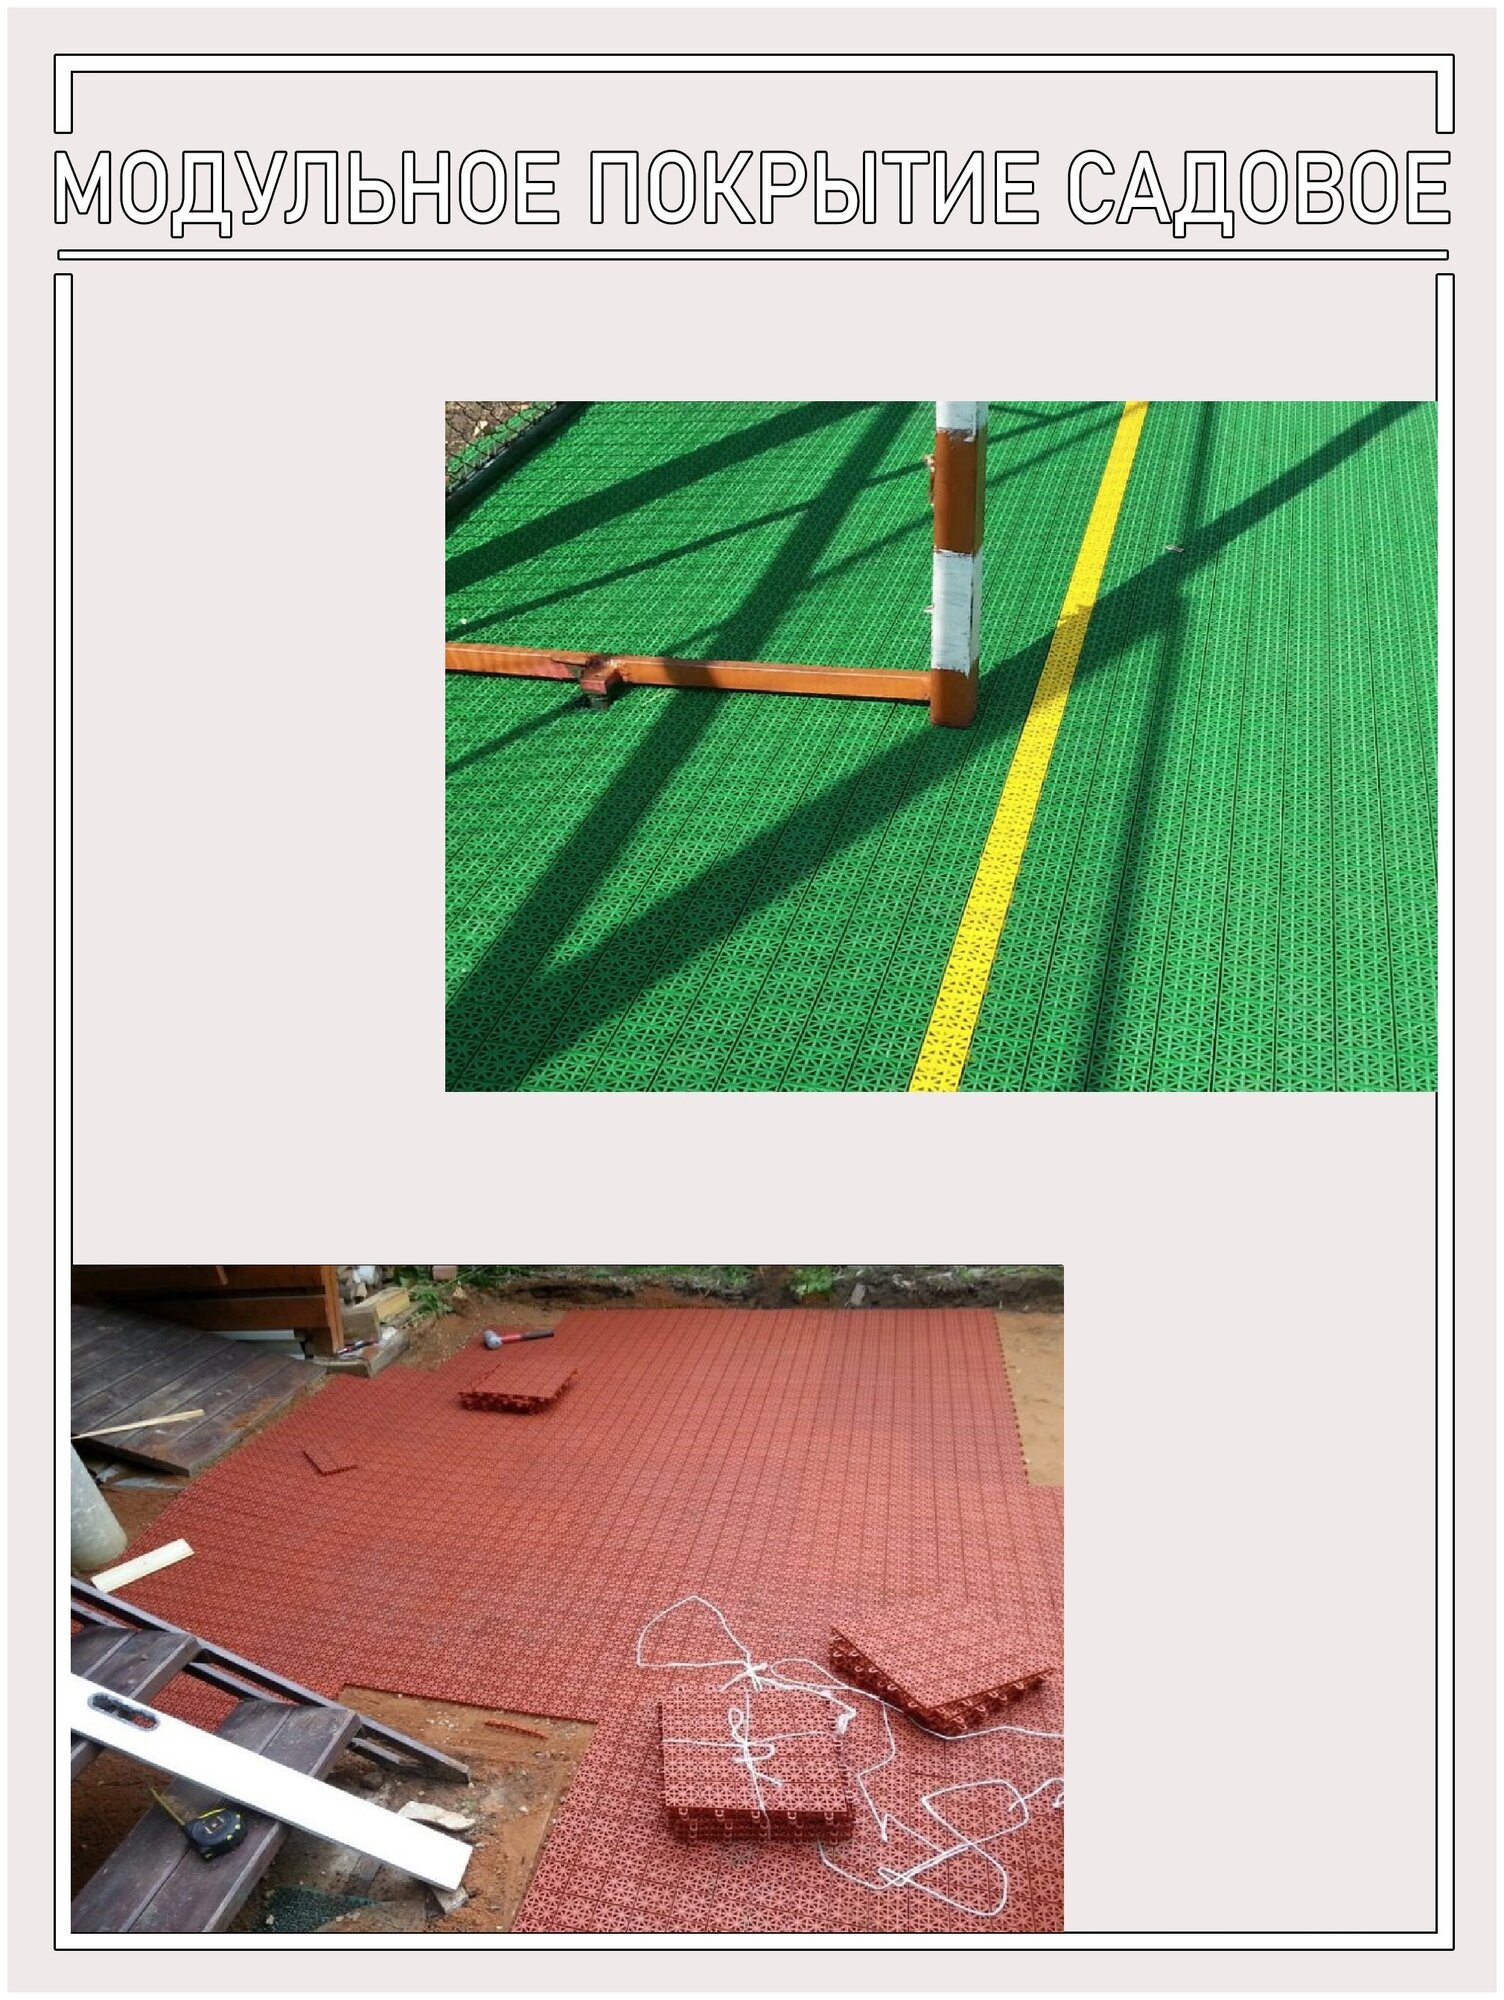 Модульное покрытие универсальное для улиц и помещений, цвет хаки (5 упаковок по 9 штук) - фотография № 6